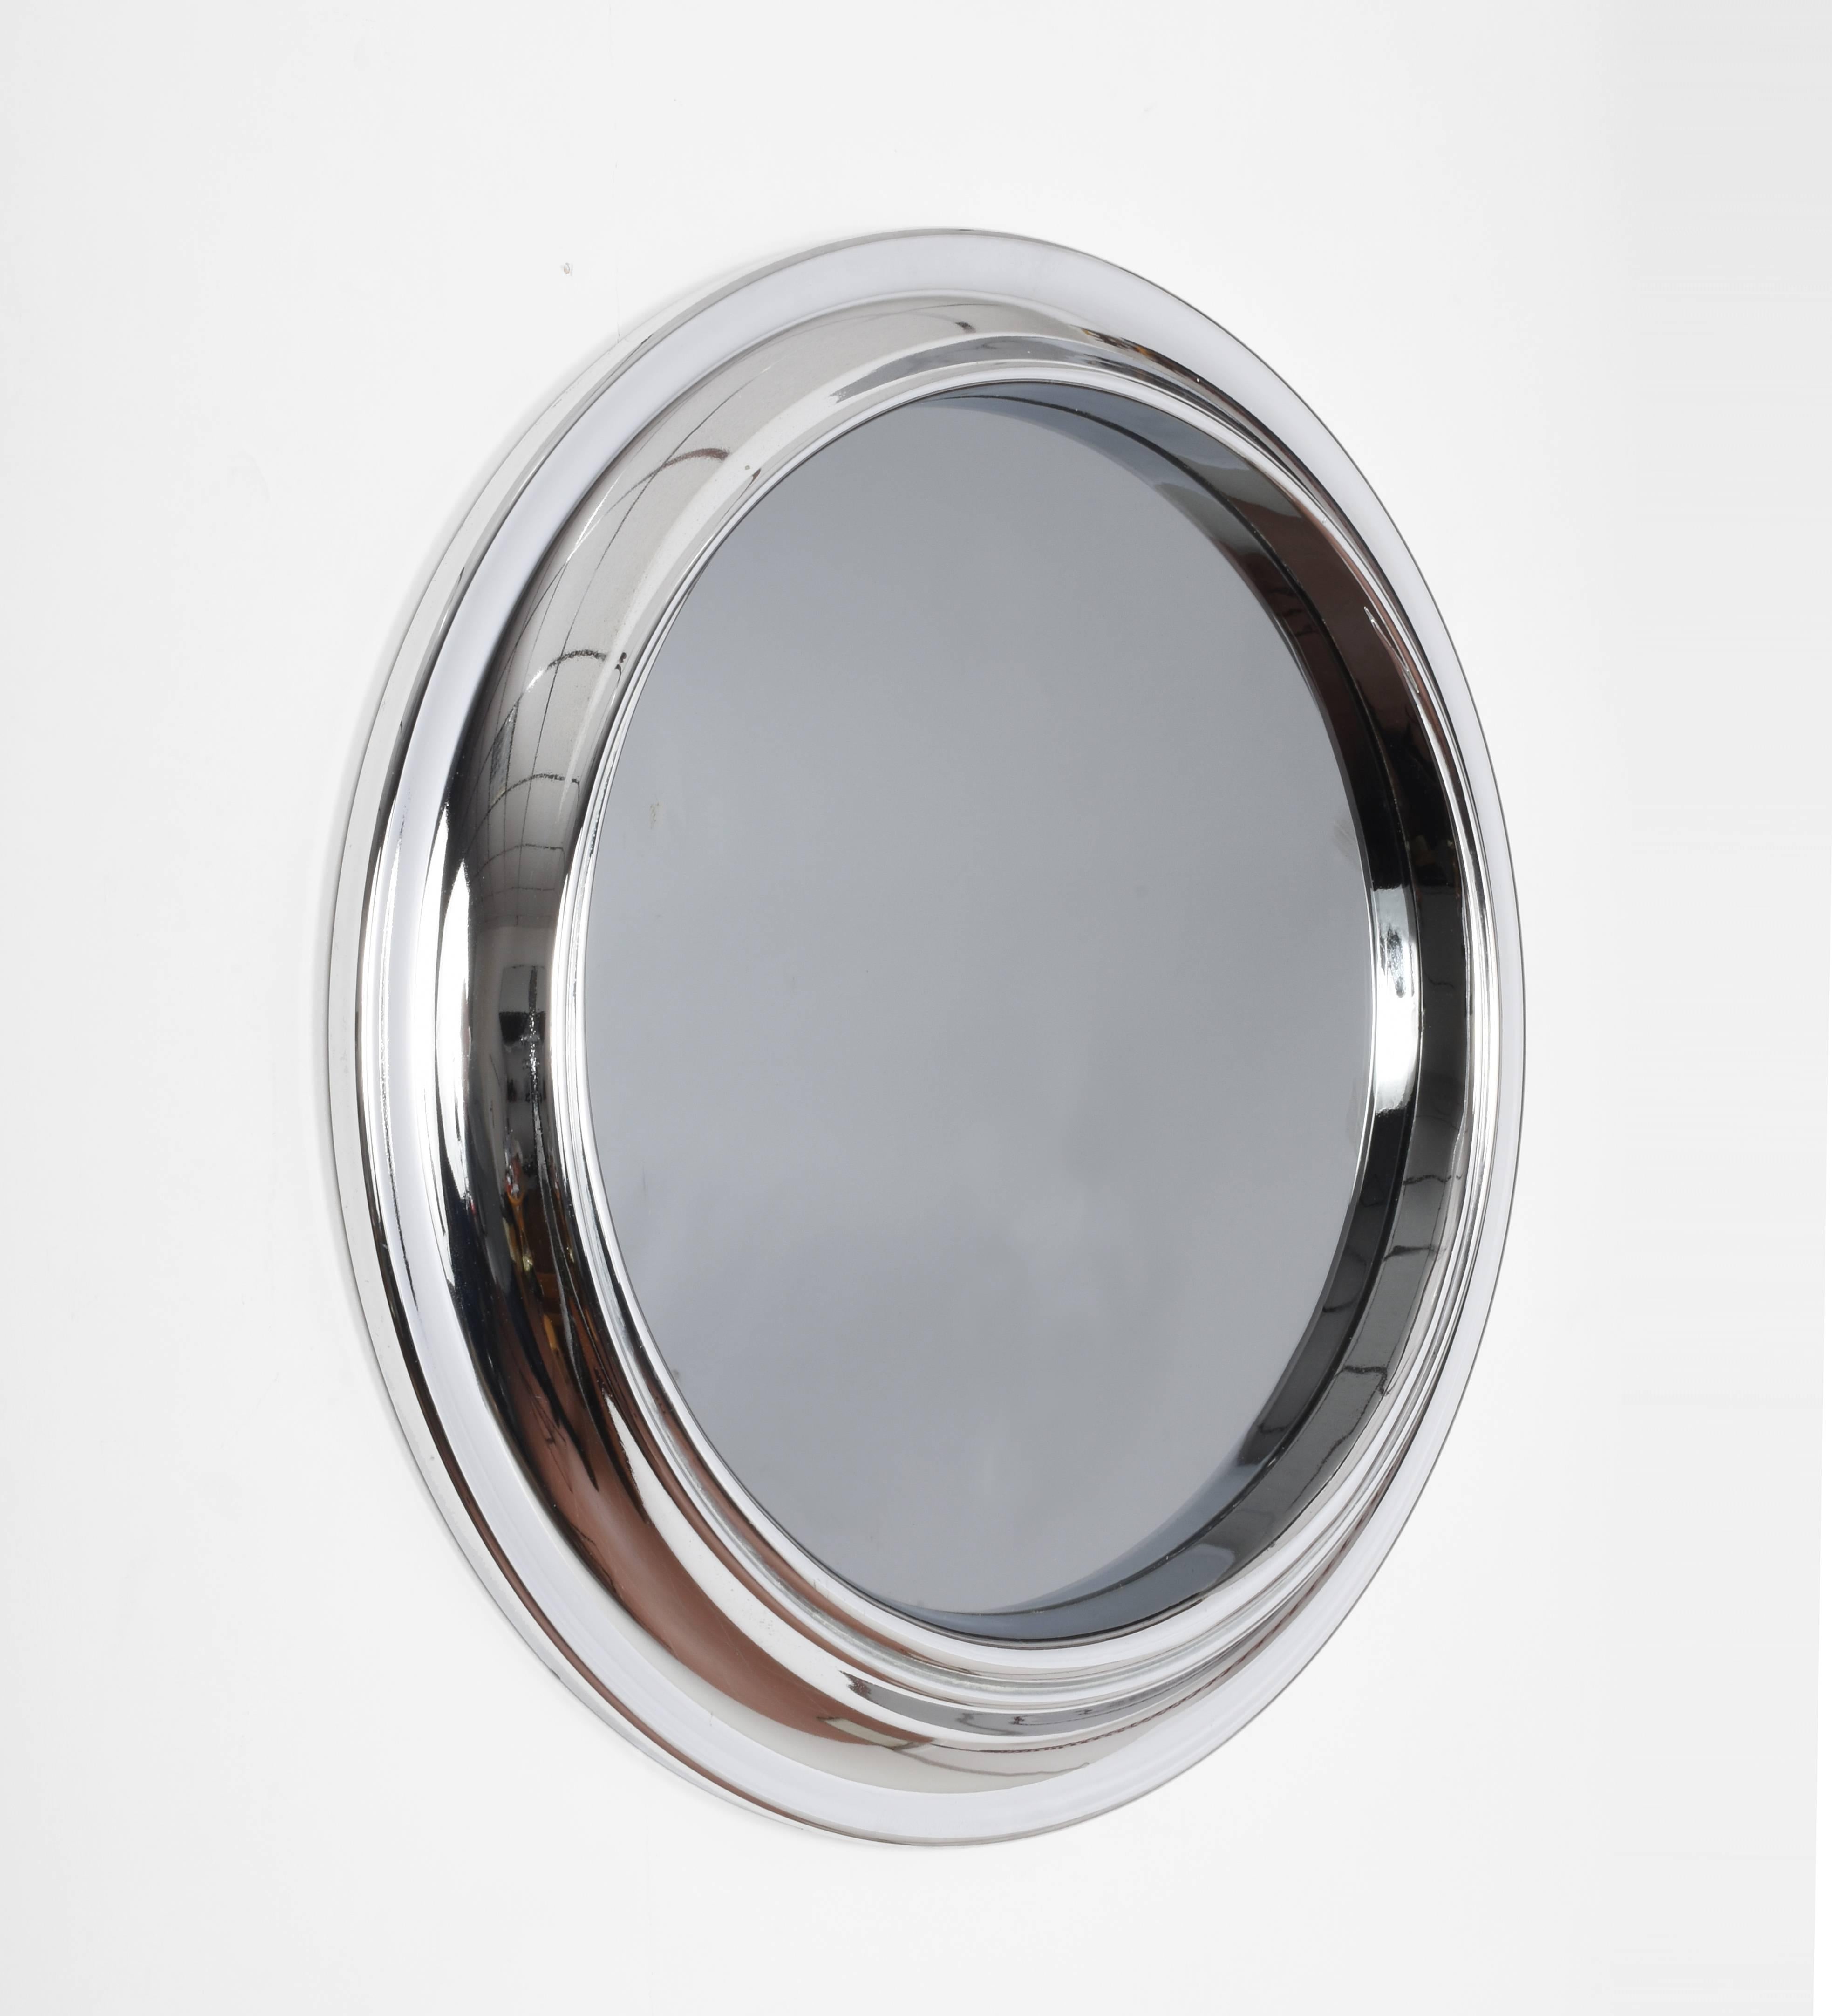 Modernistischer italienischer Chromspiegel.
Runder Spiegel mit poliertem Chromrahmen. Der ursprüngliche Spiegel in der Mitte ist in ausgezeichnetem Zustand, und der Rahmen hat eine konkave Mitte, die Tiefe und Textur erzeugt. Dieser einfache